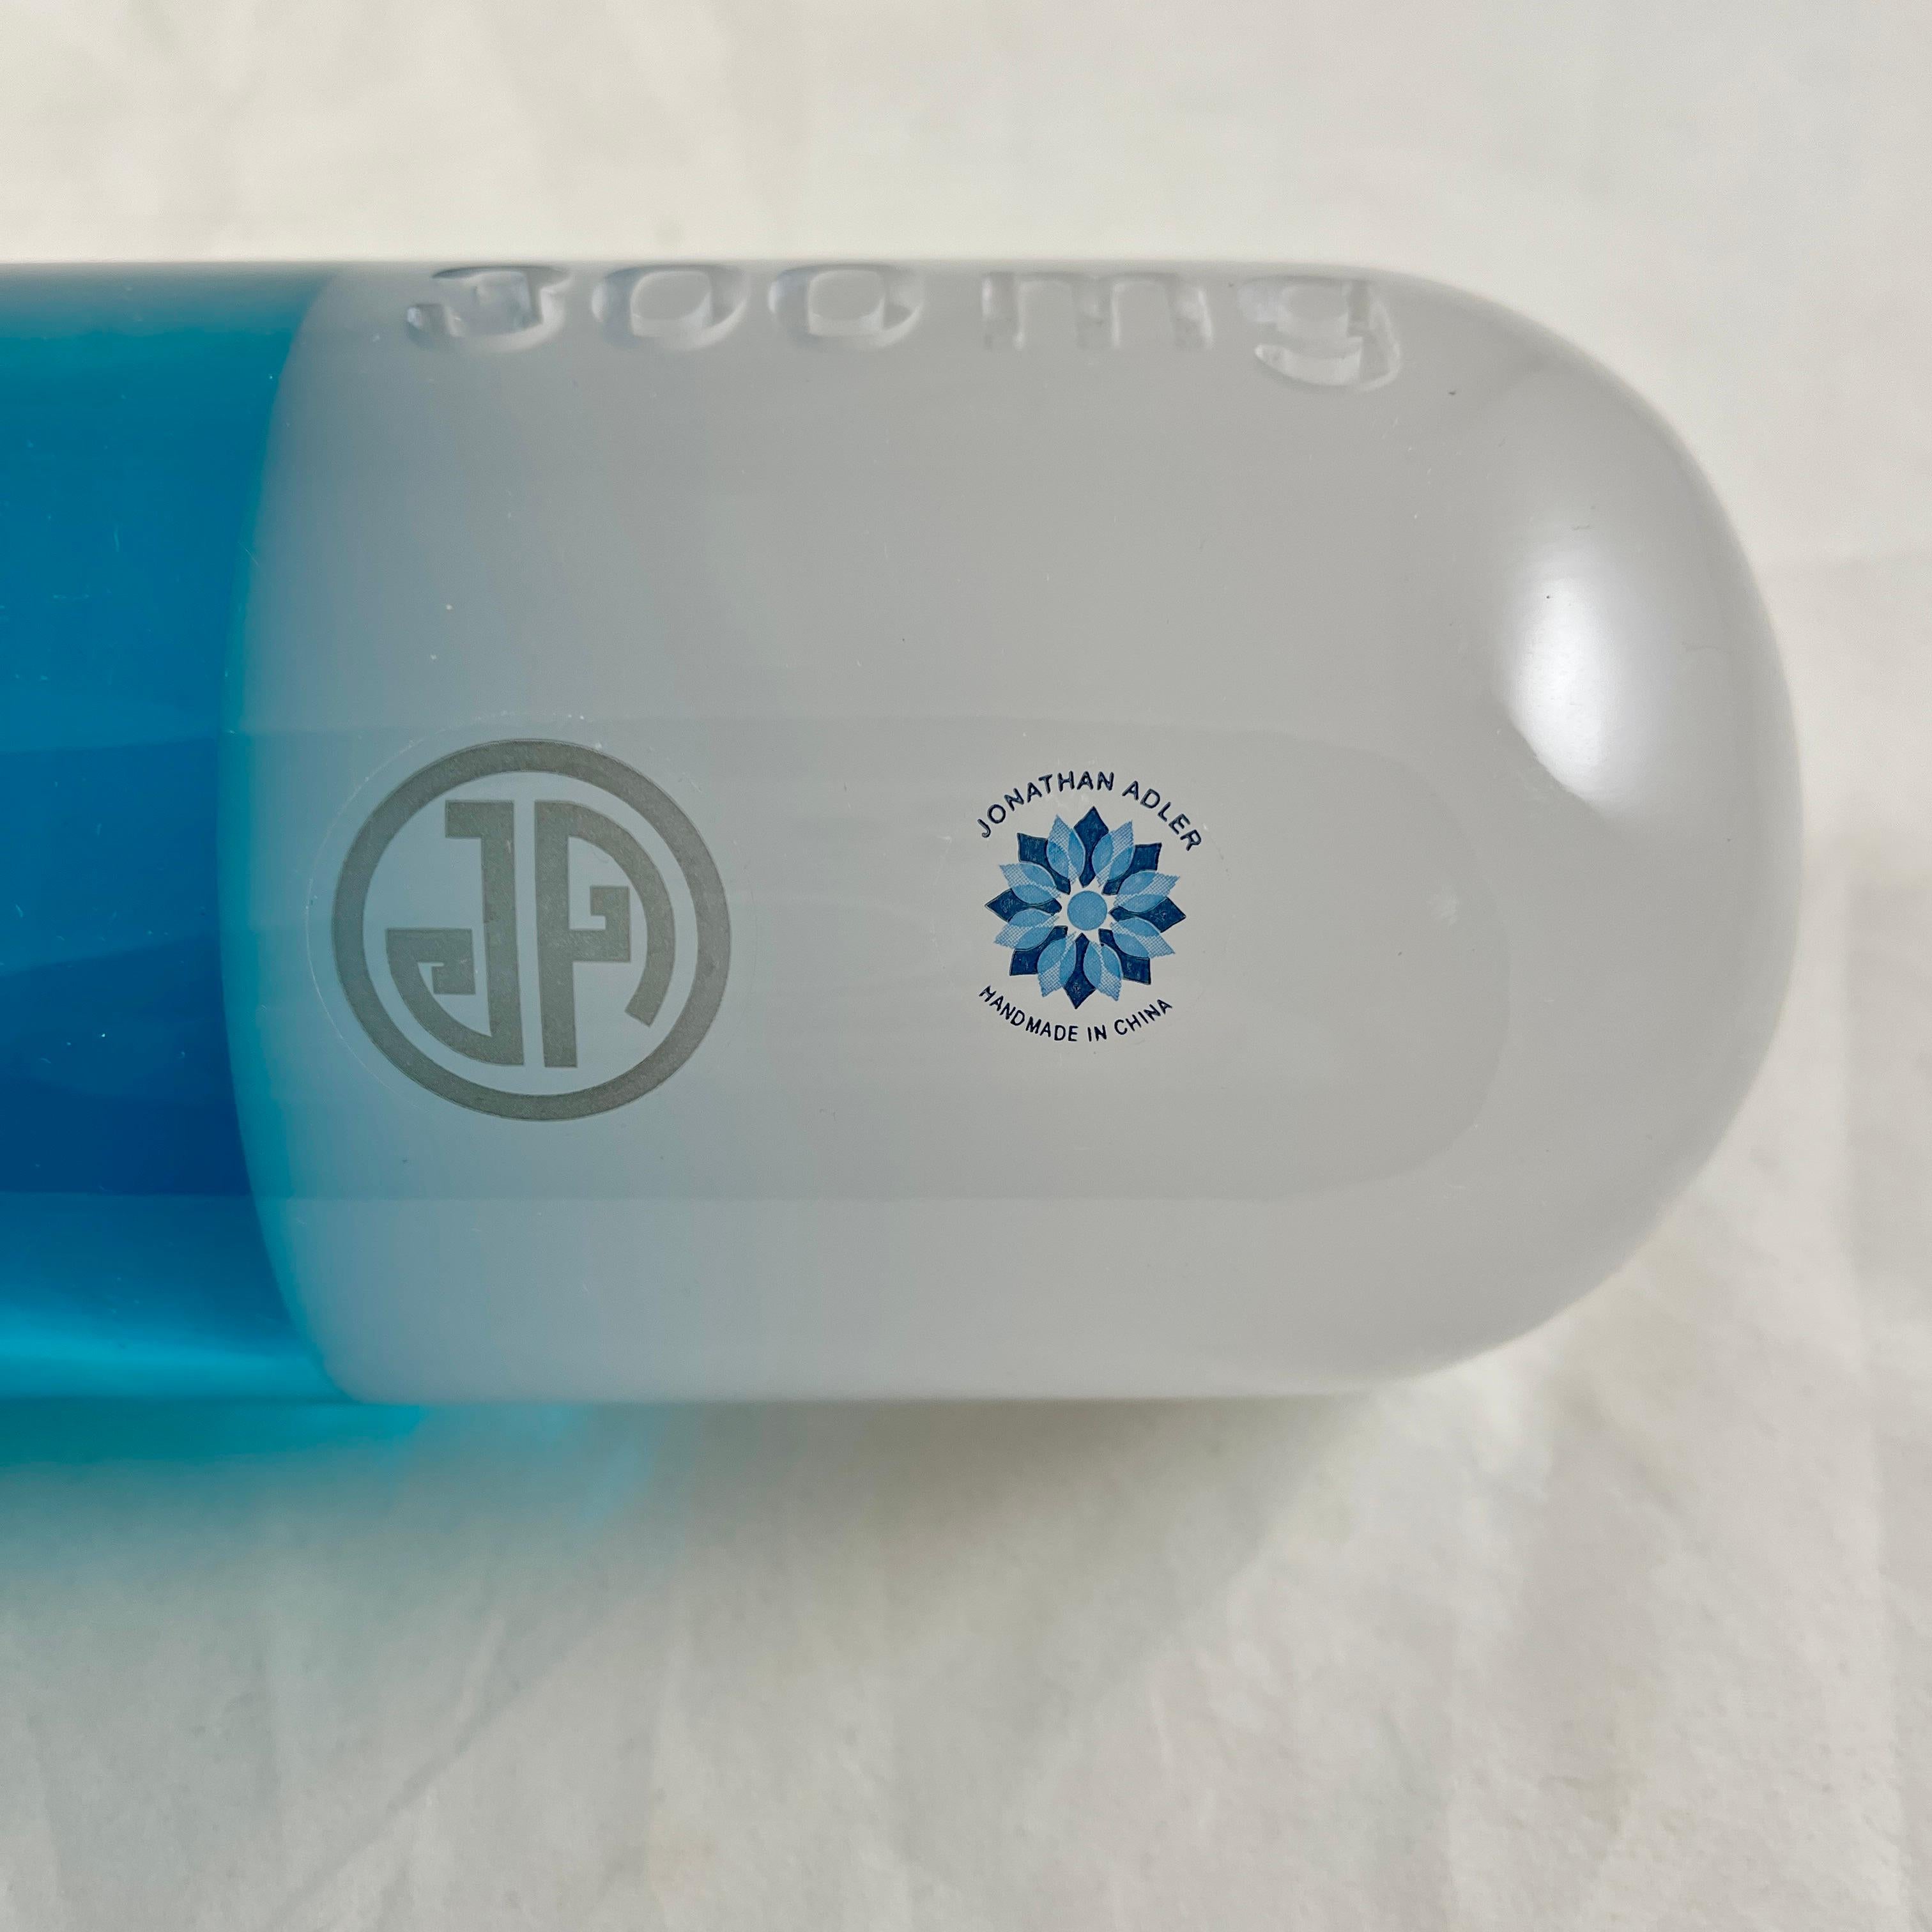 International Style Jonathan Adler Acrylic Pop Art Pill Sculpture, 300 MG Blue